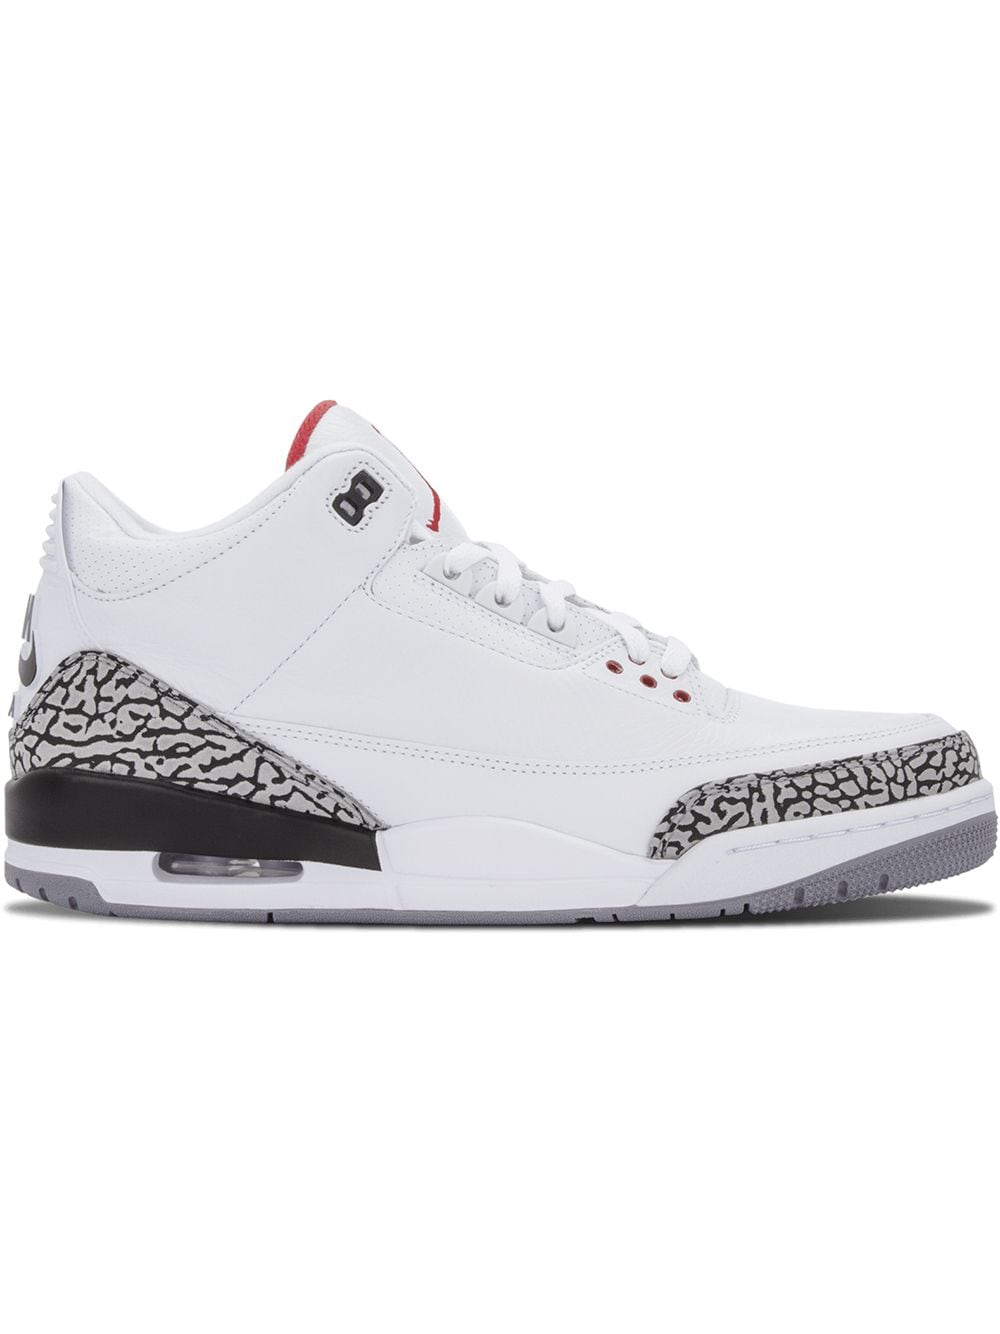 Jordan Air Jordan 3 Retro "White Cement '88 (2013)" sneakers